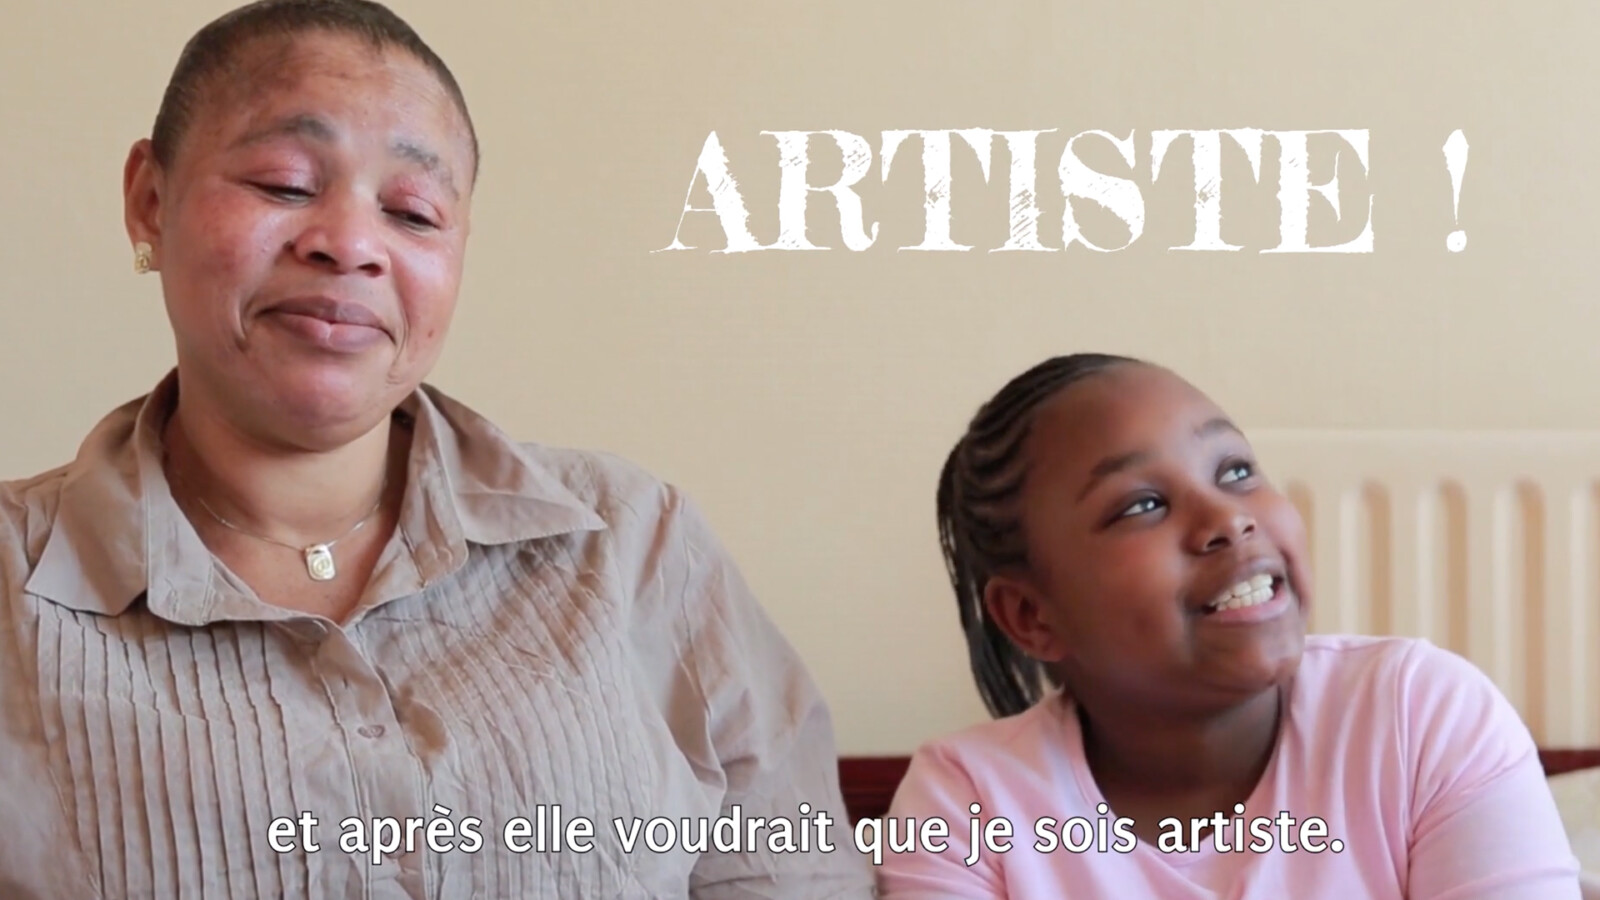 Capture d'écran d'une interview d'une élève et de sa maman. L'intervention typographique suggère qu'elle voudrait devenir artiste.